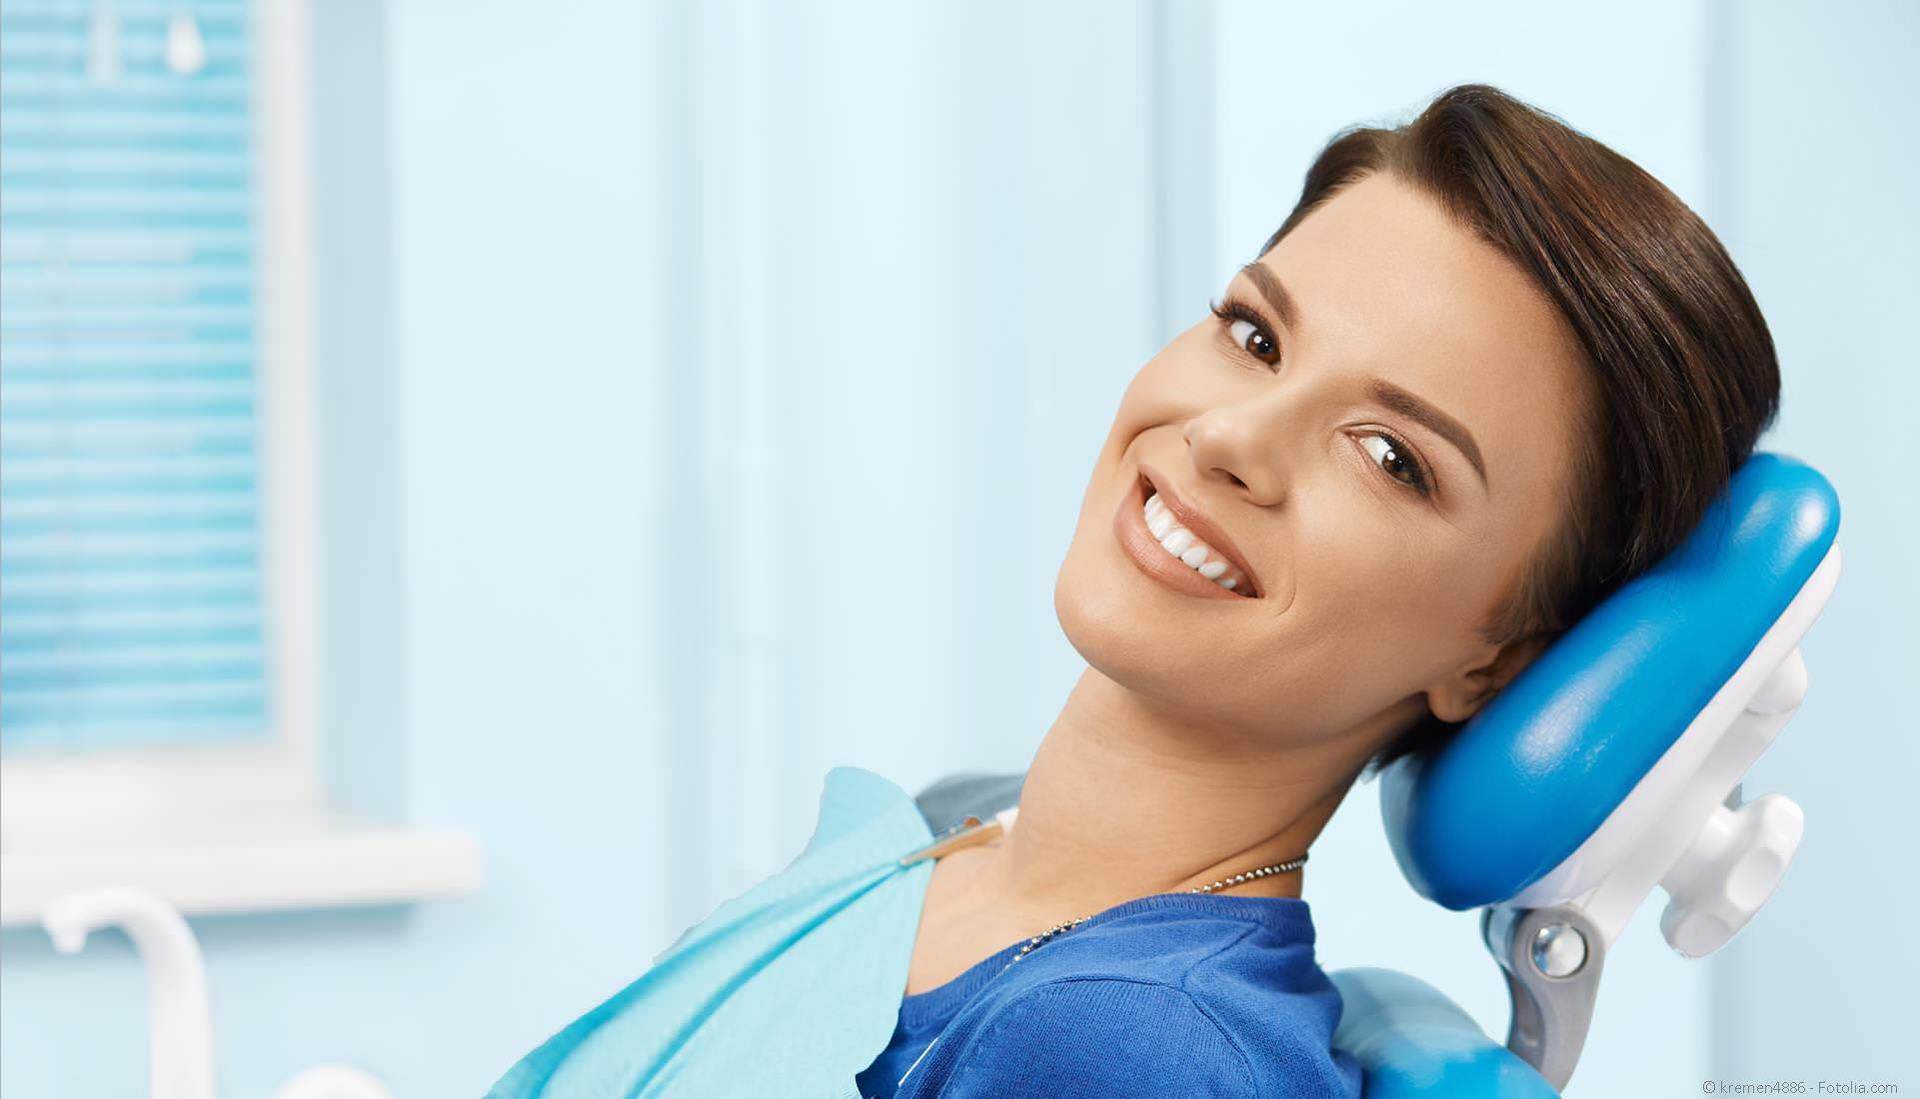 Gesunde Zähne und gesundes Zahnfleisch mit Prophylaxe und Professioneller Zahnreinigung (PZR)